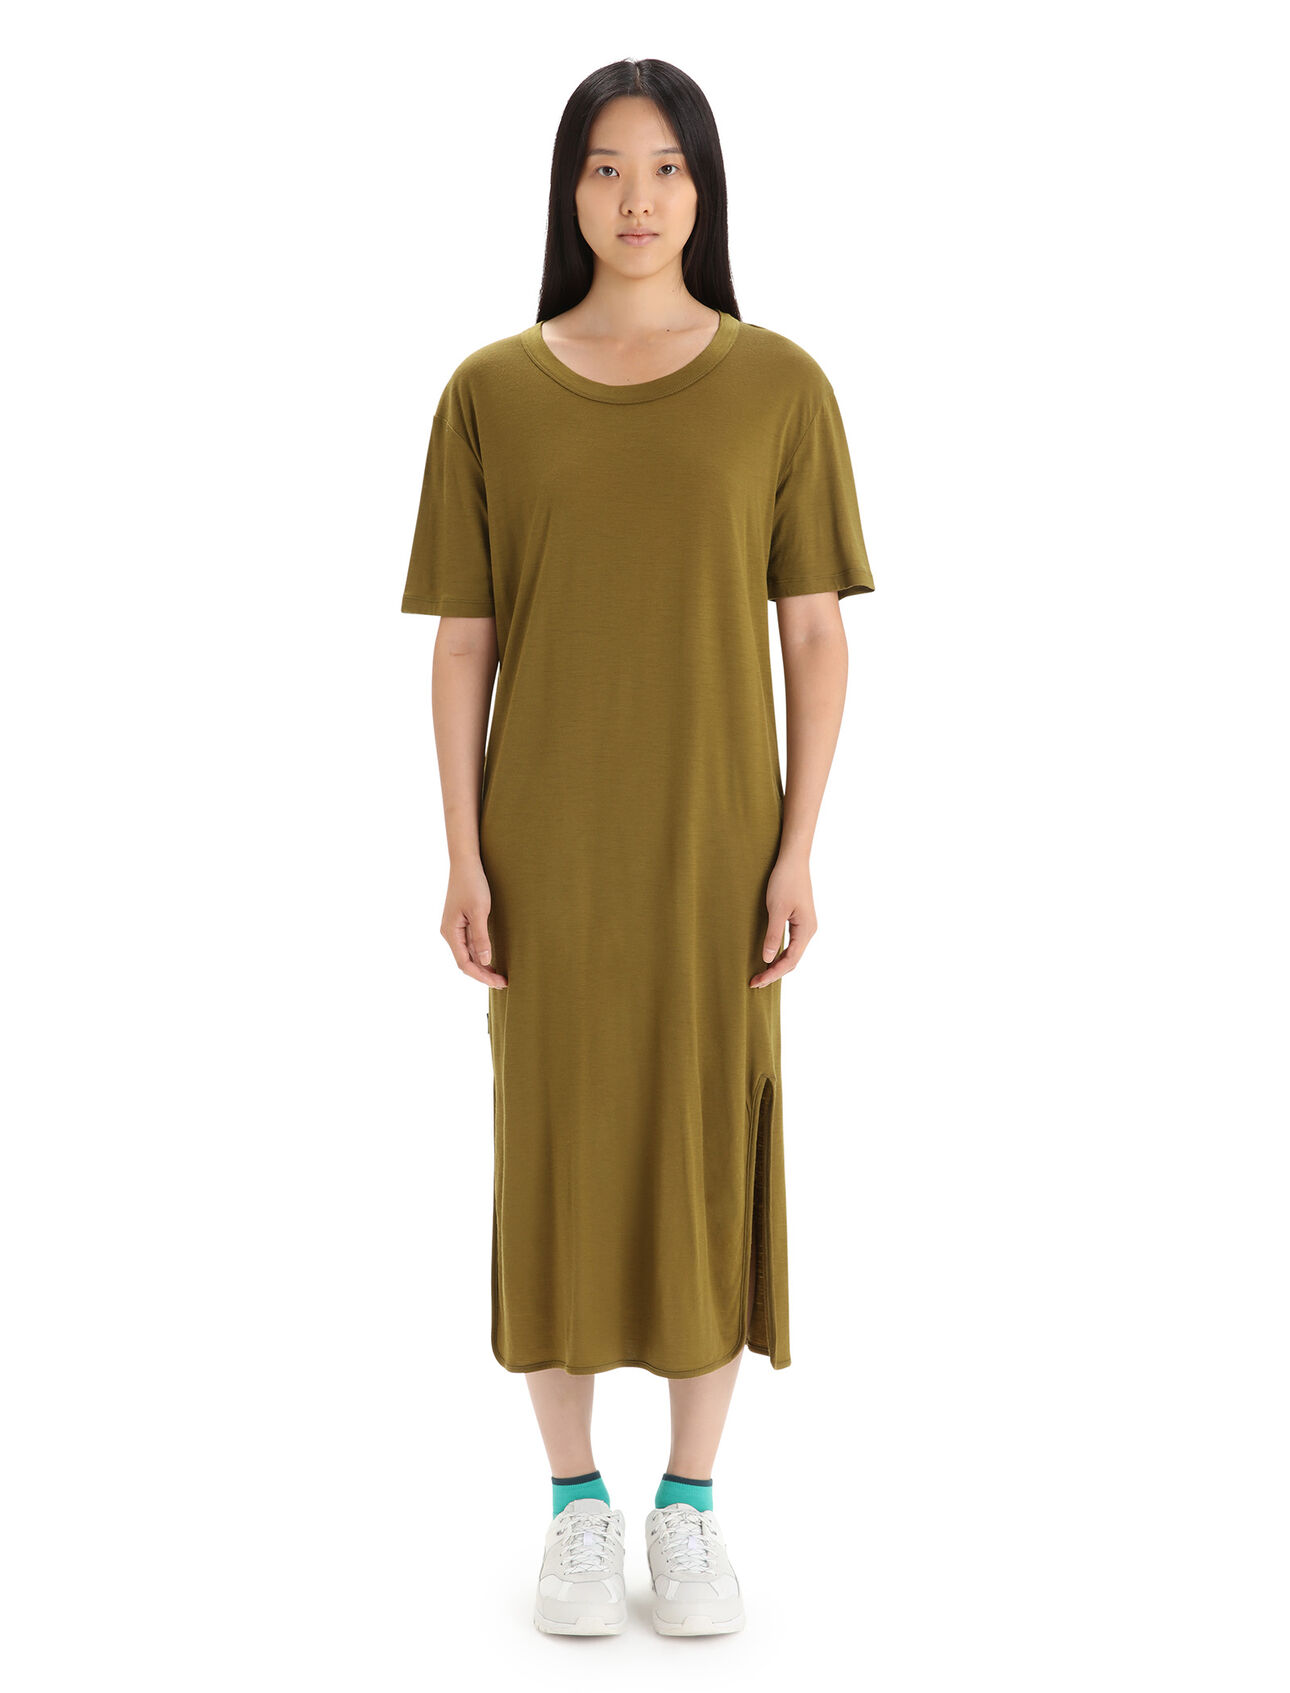 Dam Granary klänning i merino Granary t-shirtklänning är en elegant midiklänning som passar perfekt för mysiga hemmakvällar eller vardagsutflykter. Klänningen är tillverkad med ett mjukt och ventilerande 100% merinotyg för komfort och elegans. 